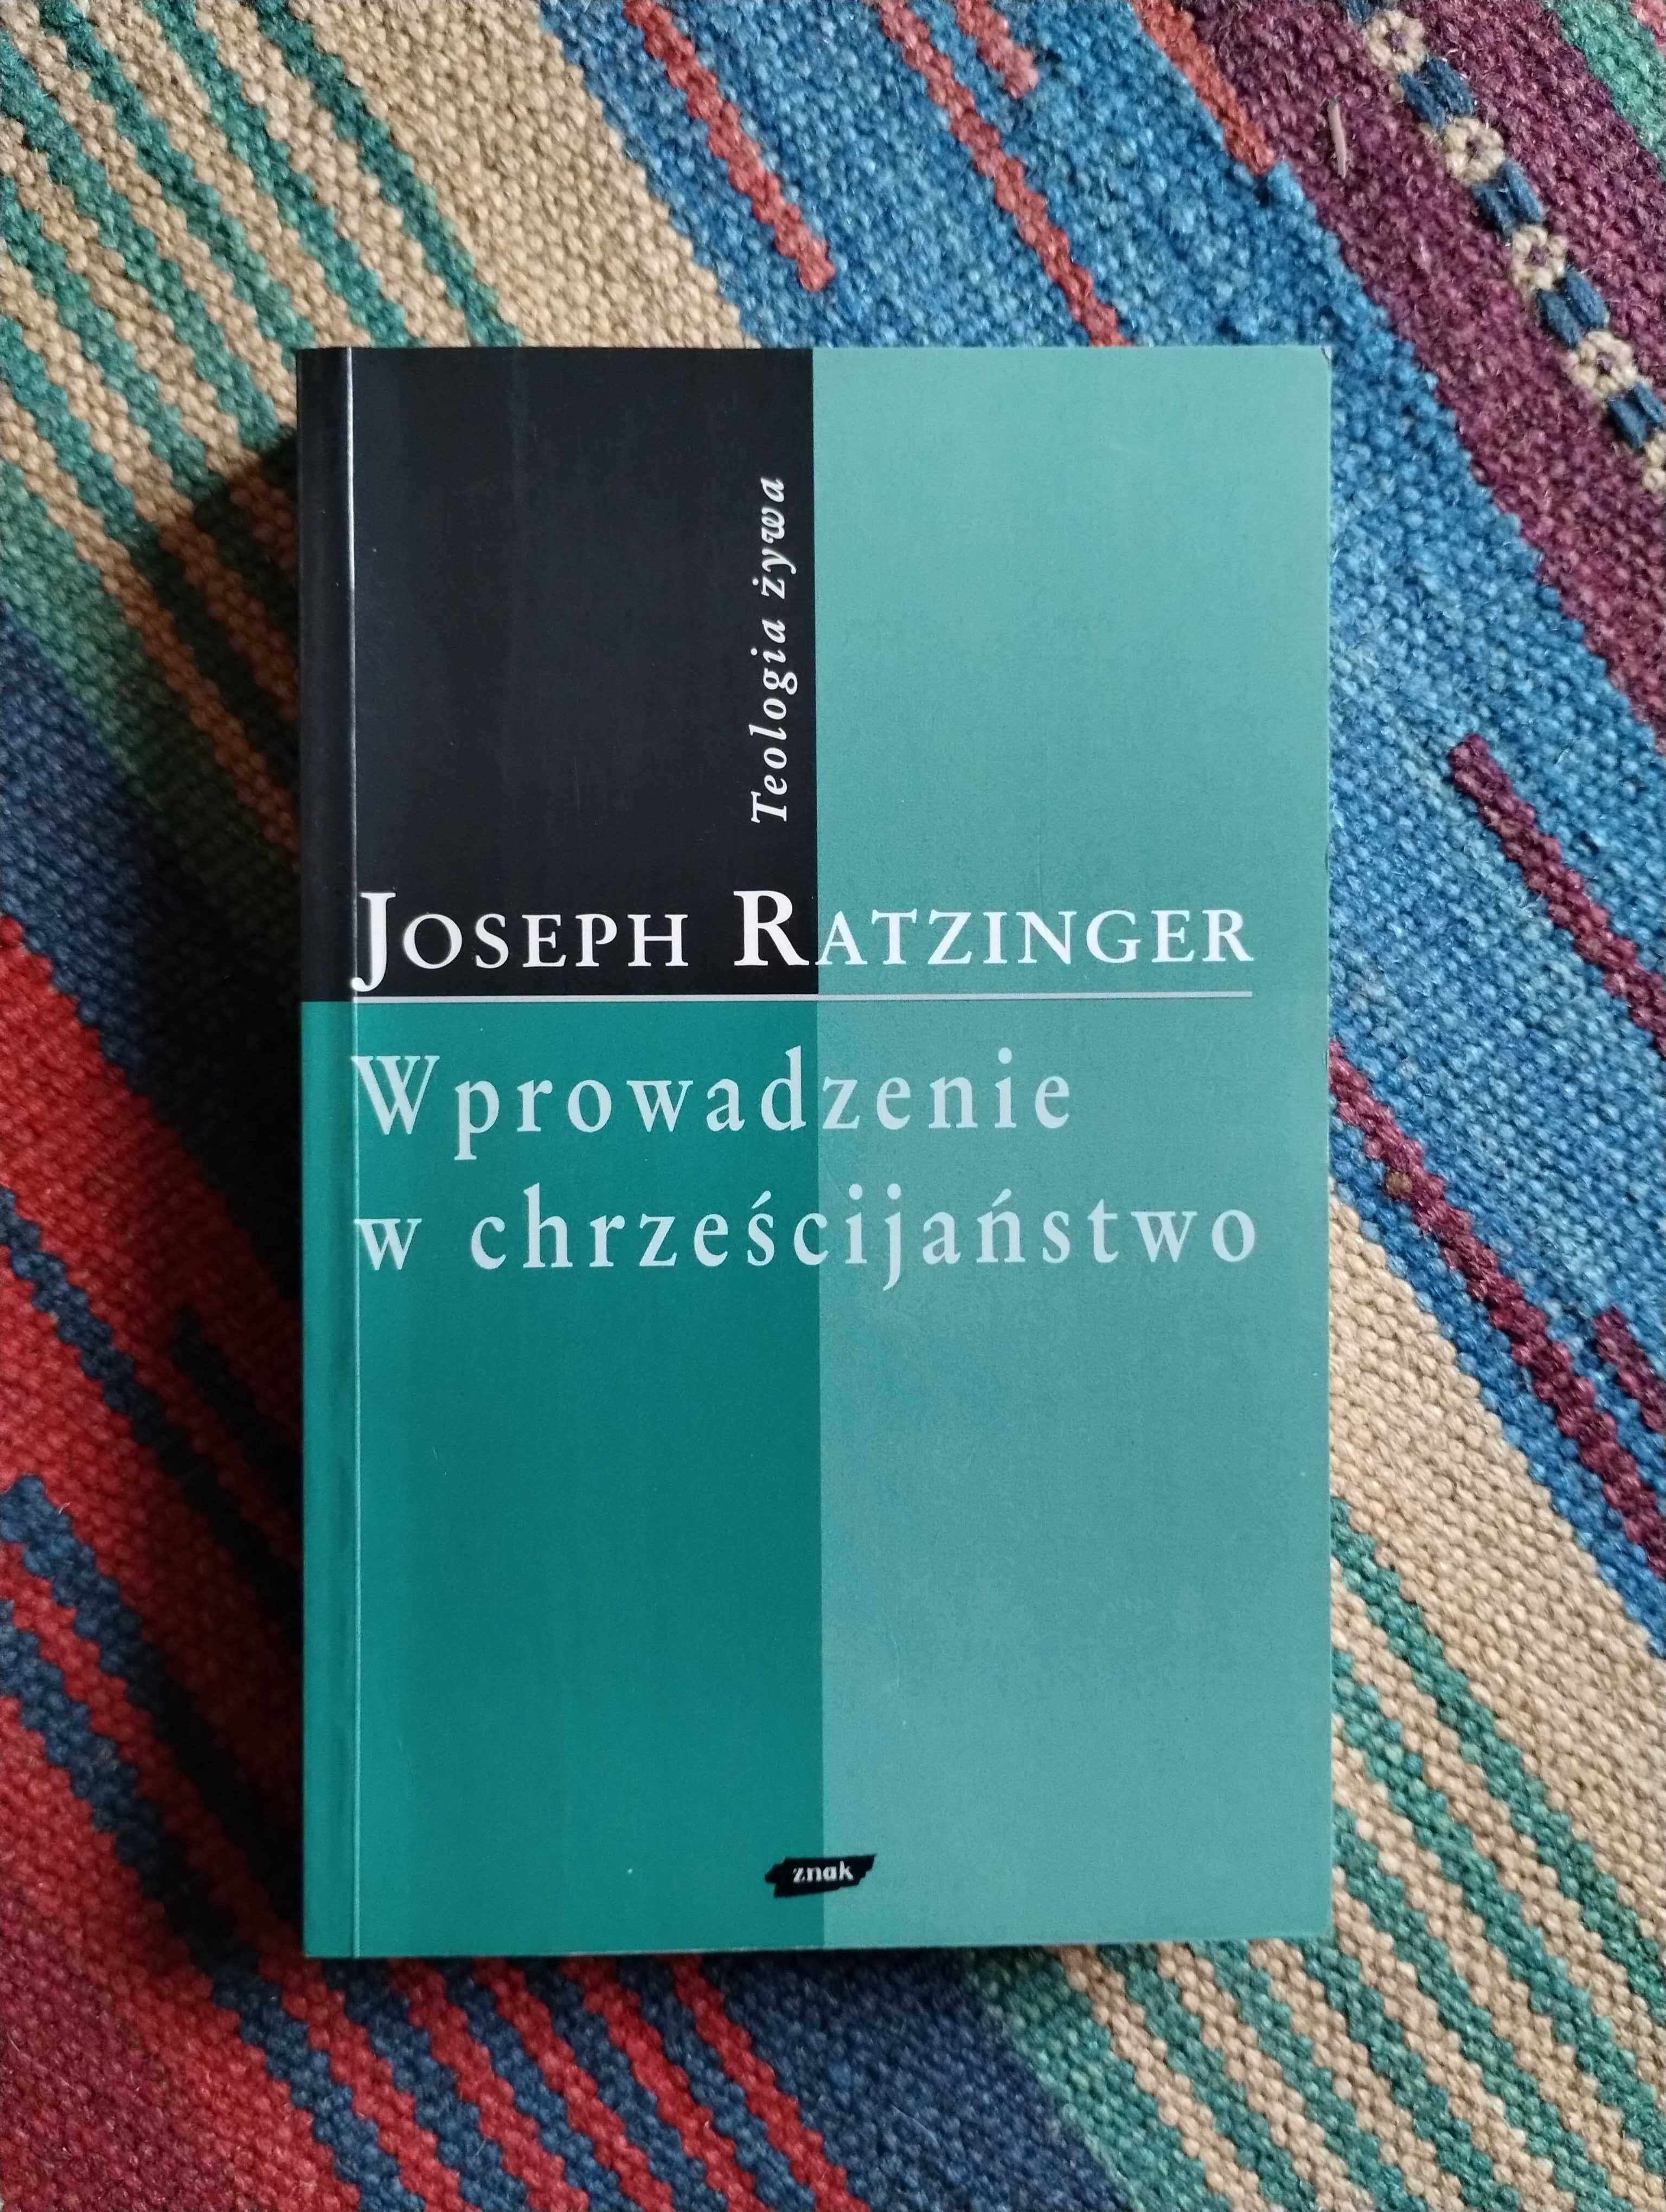 Joseph Ratzinger  Wprowadzenie w chrześcijaństwo